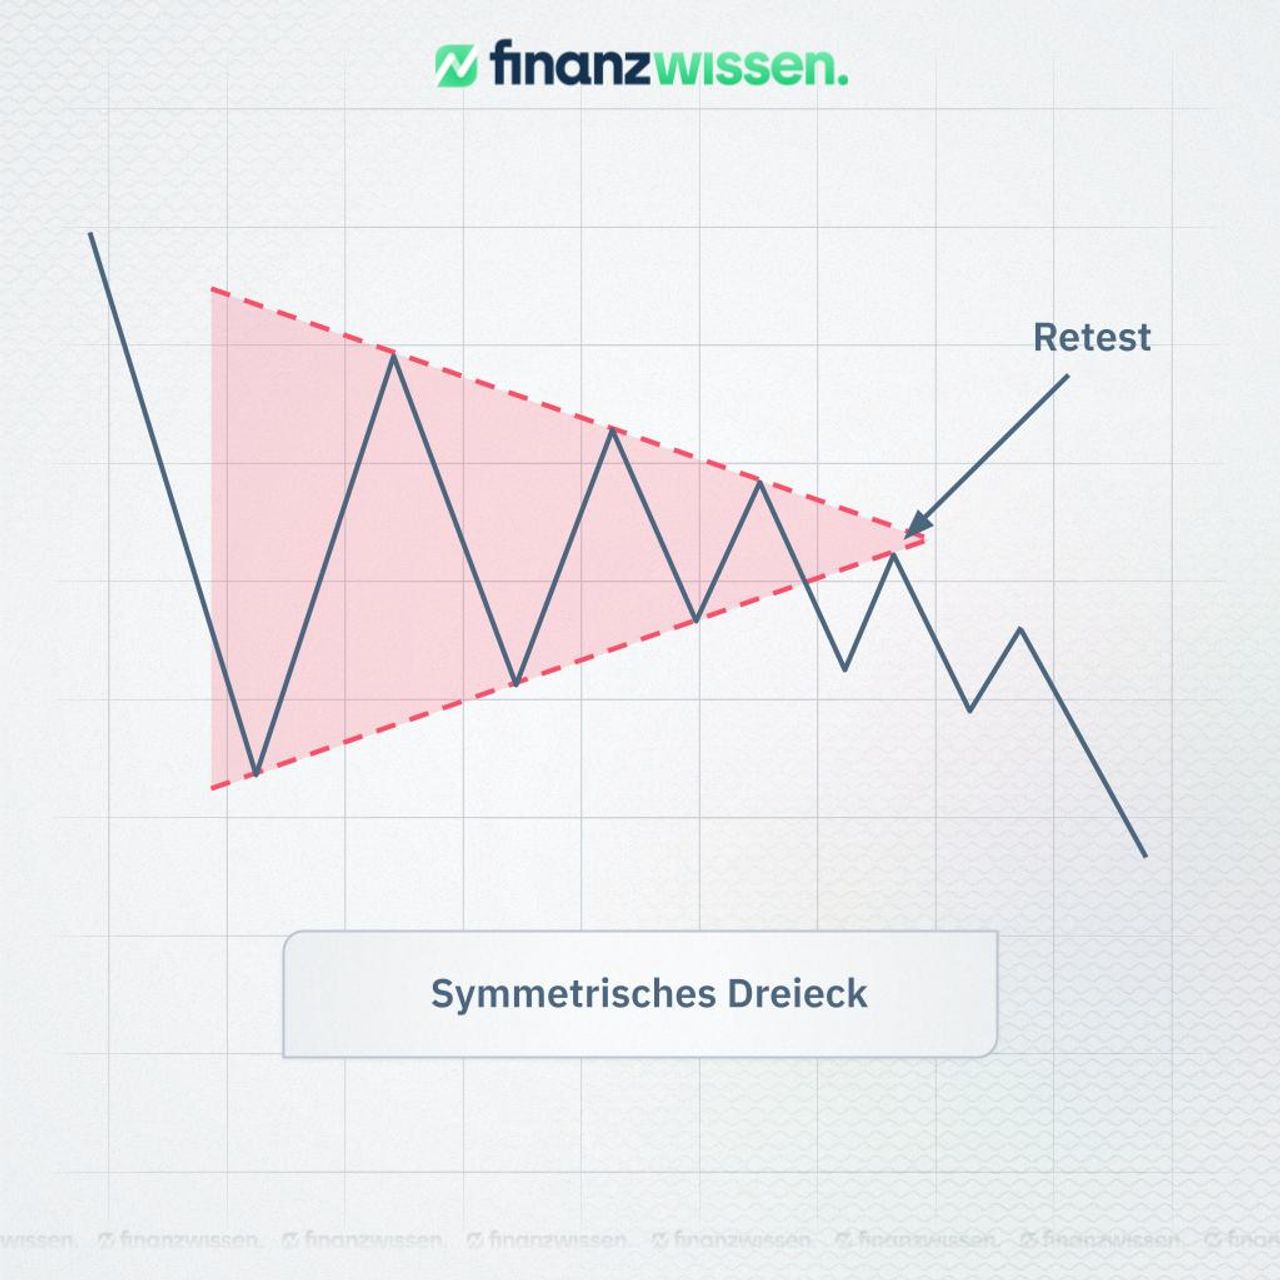 Symmetrisches Dreieck mit Retest. Dargestellt in einem Linien-Chart.